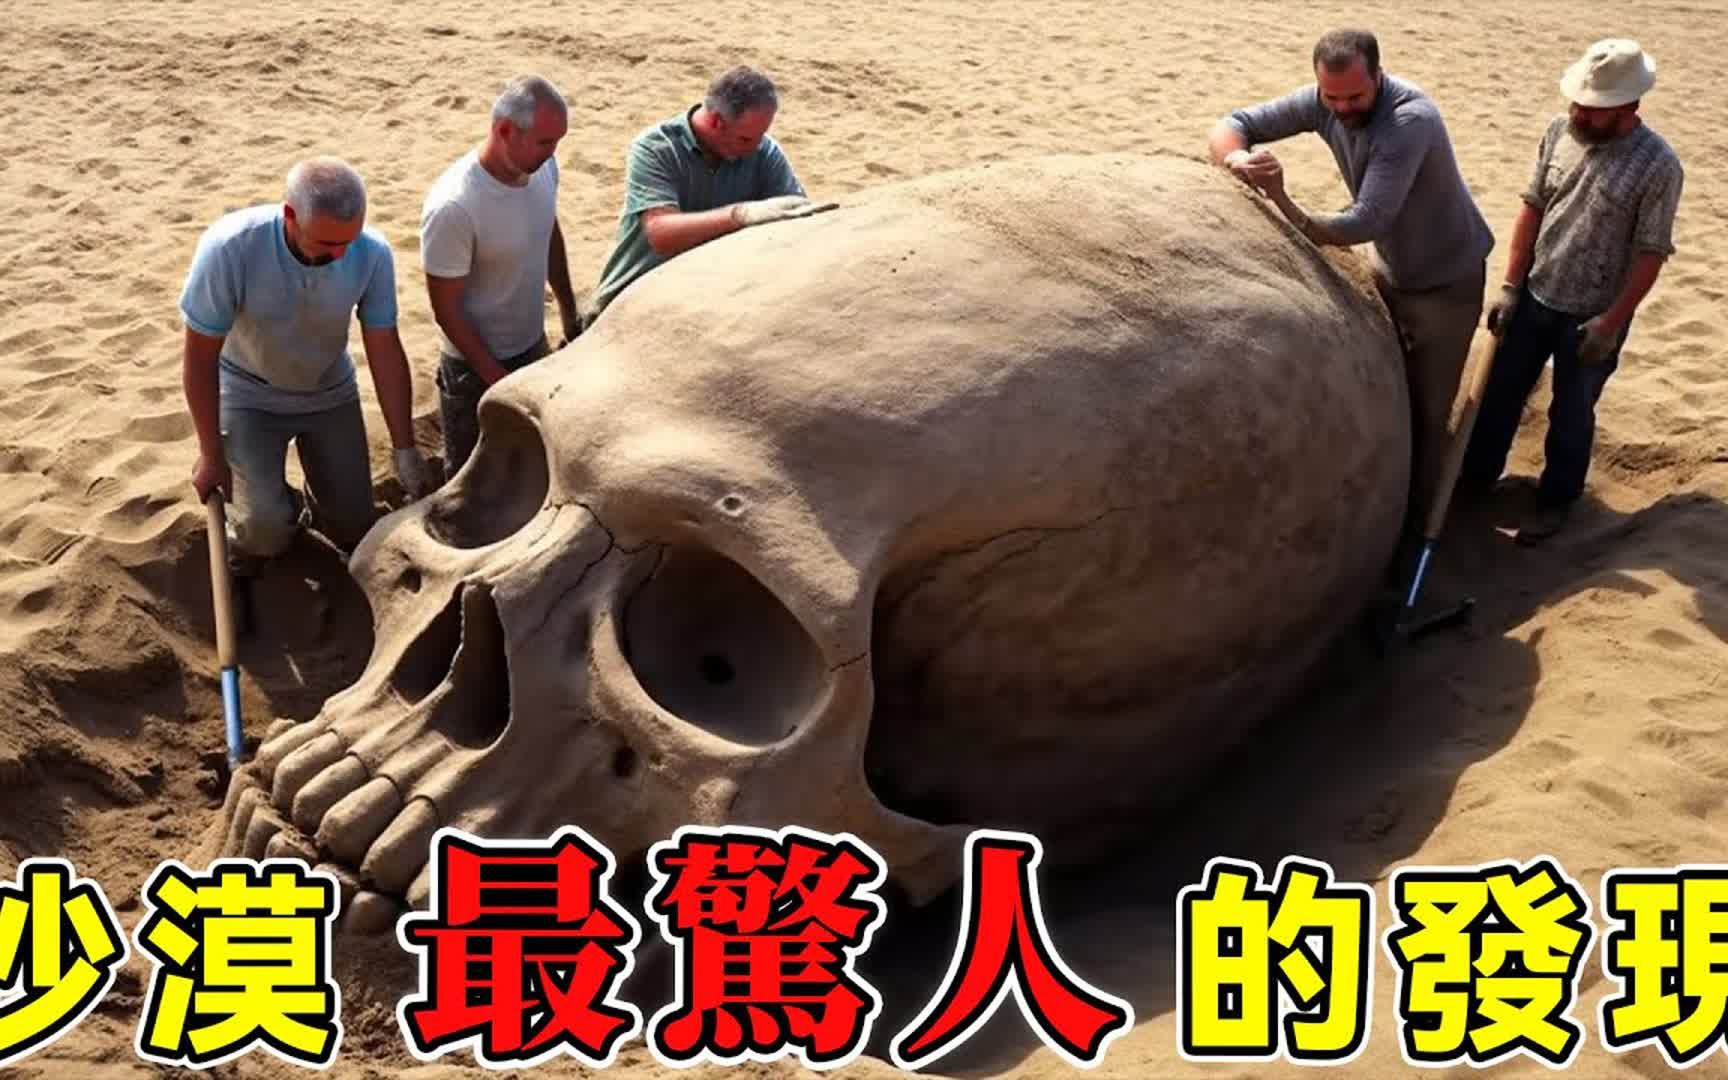 考古学家在撒哈拉沙漠发现的巨人头骨，彻底改变人类历史，令世界震惊的15个沙漠发现